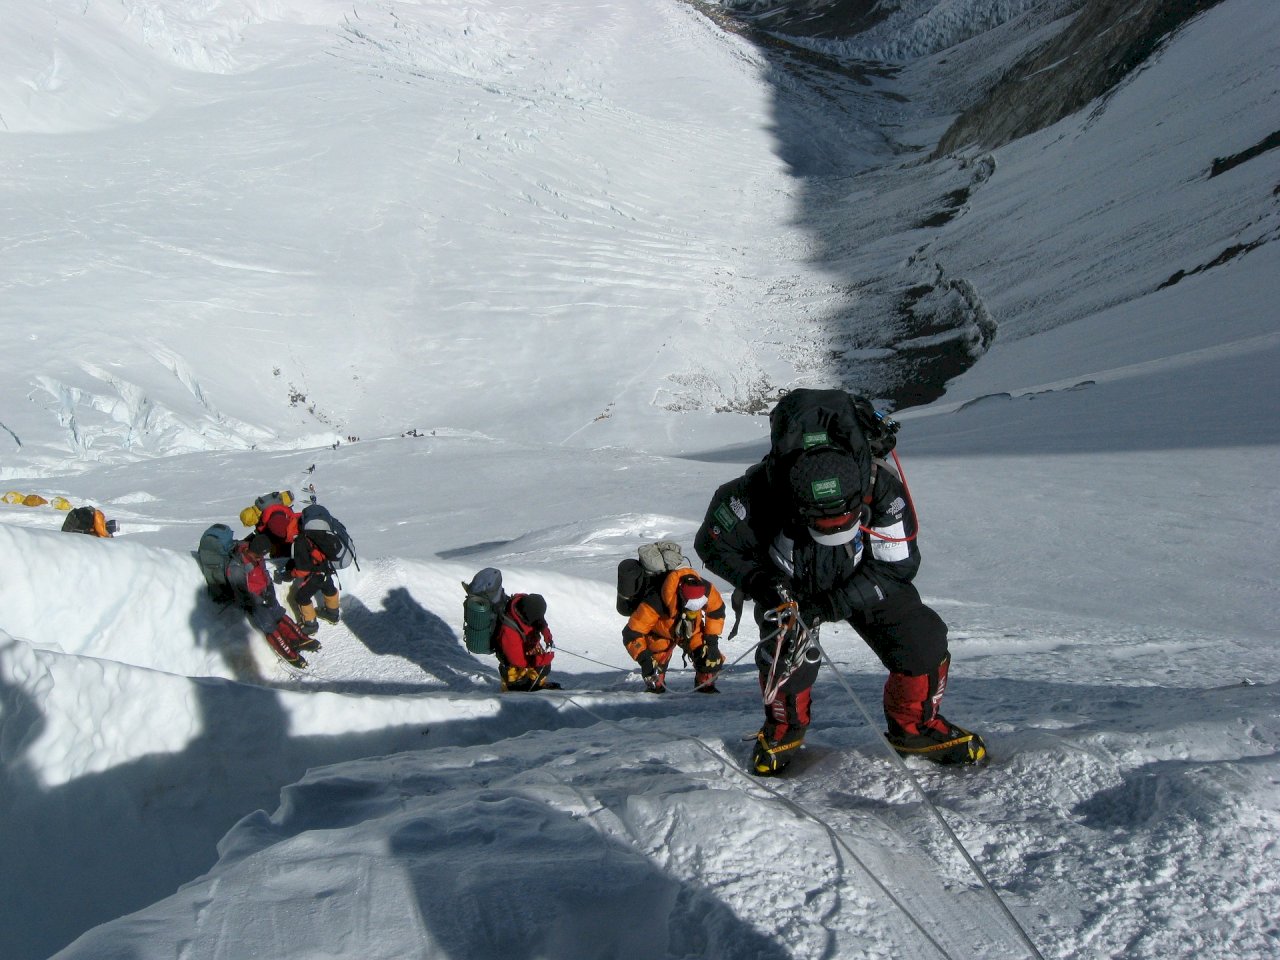 登山客攀登聖母峰殞命 多因雪崩與意外墜落